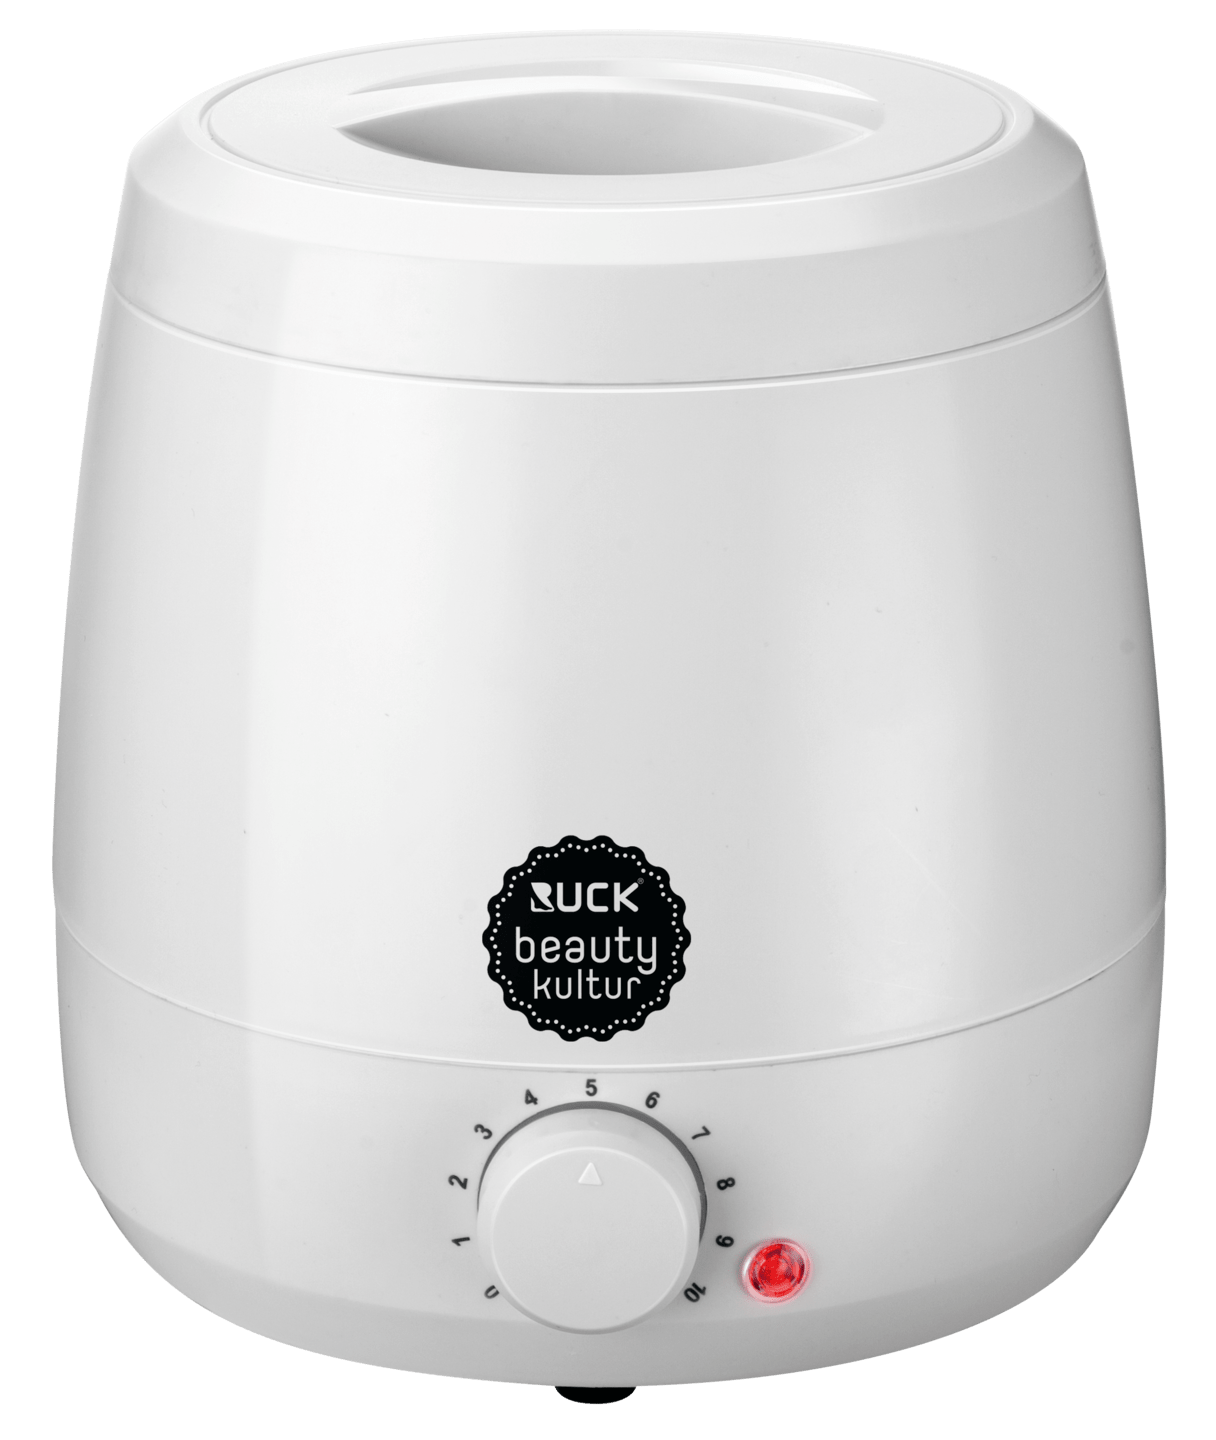 RUCK beautykultur - Wachserwärmer für 400g Dosen in weiß